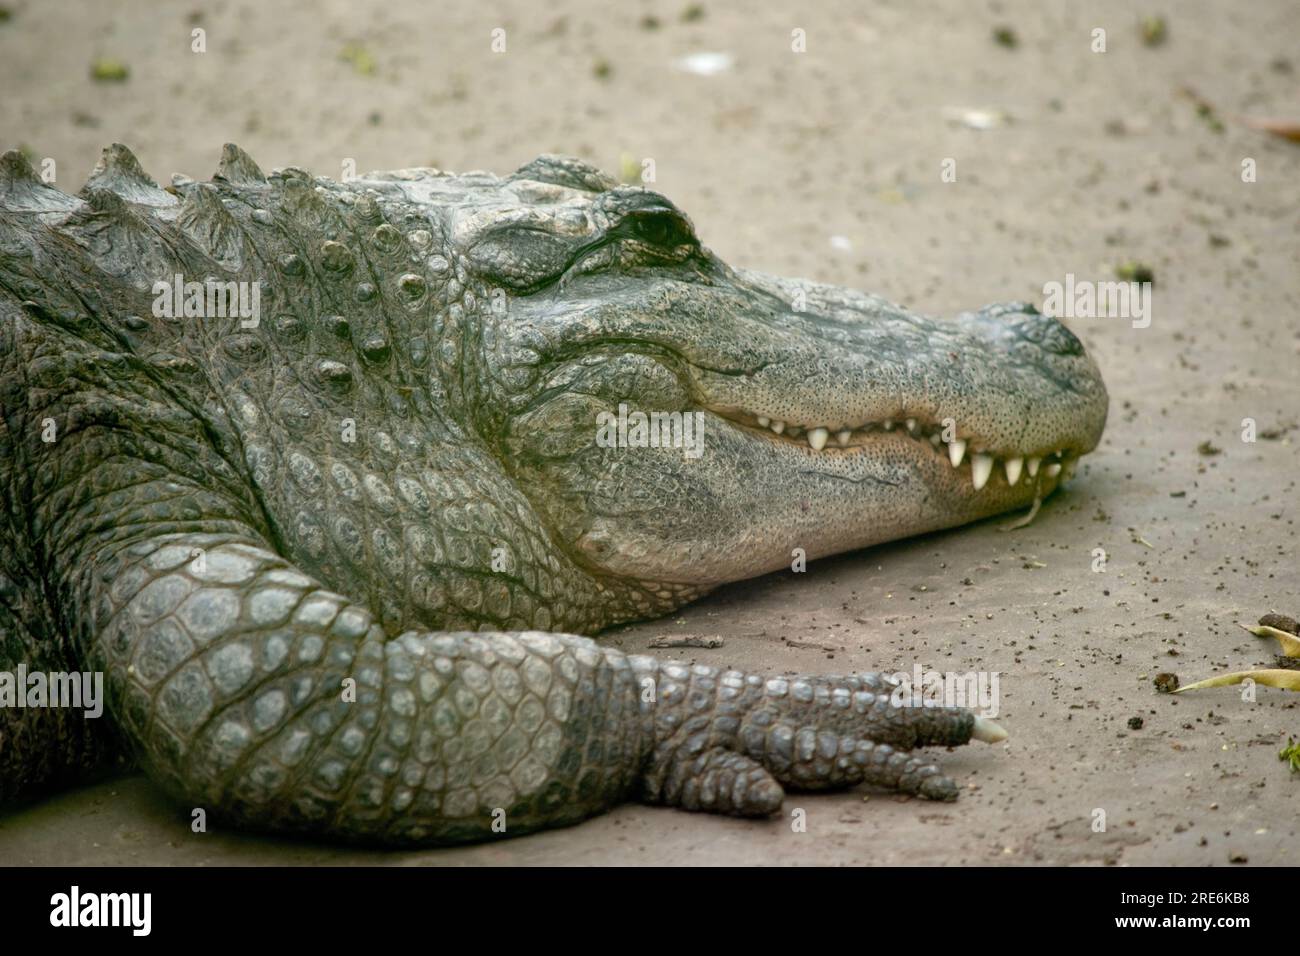 Les alligators ont un long museau arrondi qui a des narines orientées vers le haut à l'extrémité Les alligators ont un museau long et arrondi qui a une narine orientée vers le haut Banque D'Images